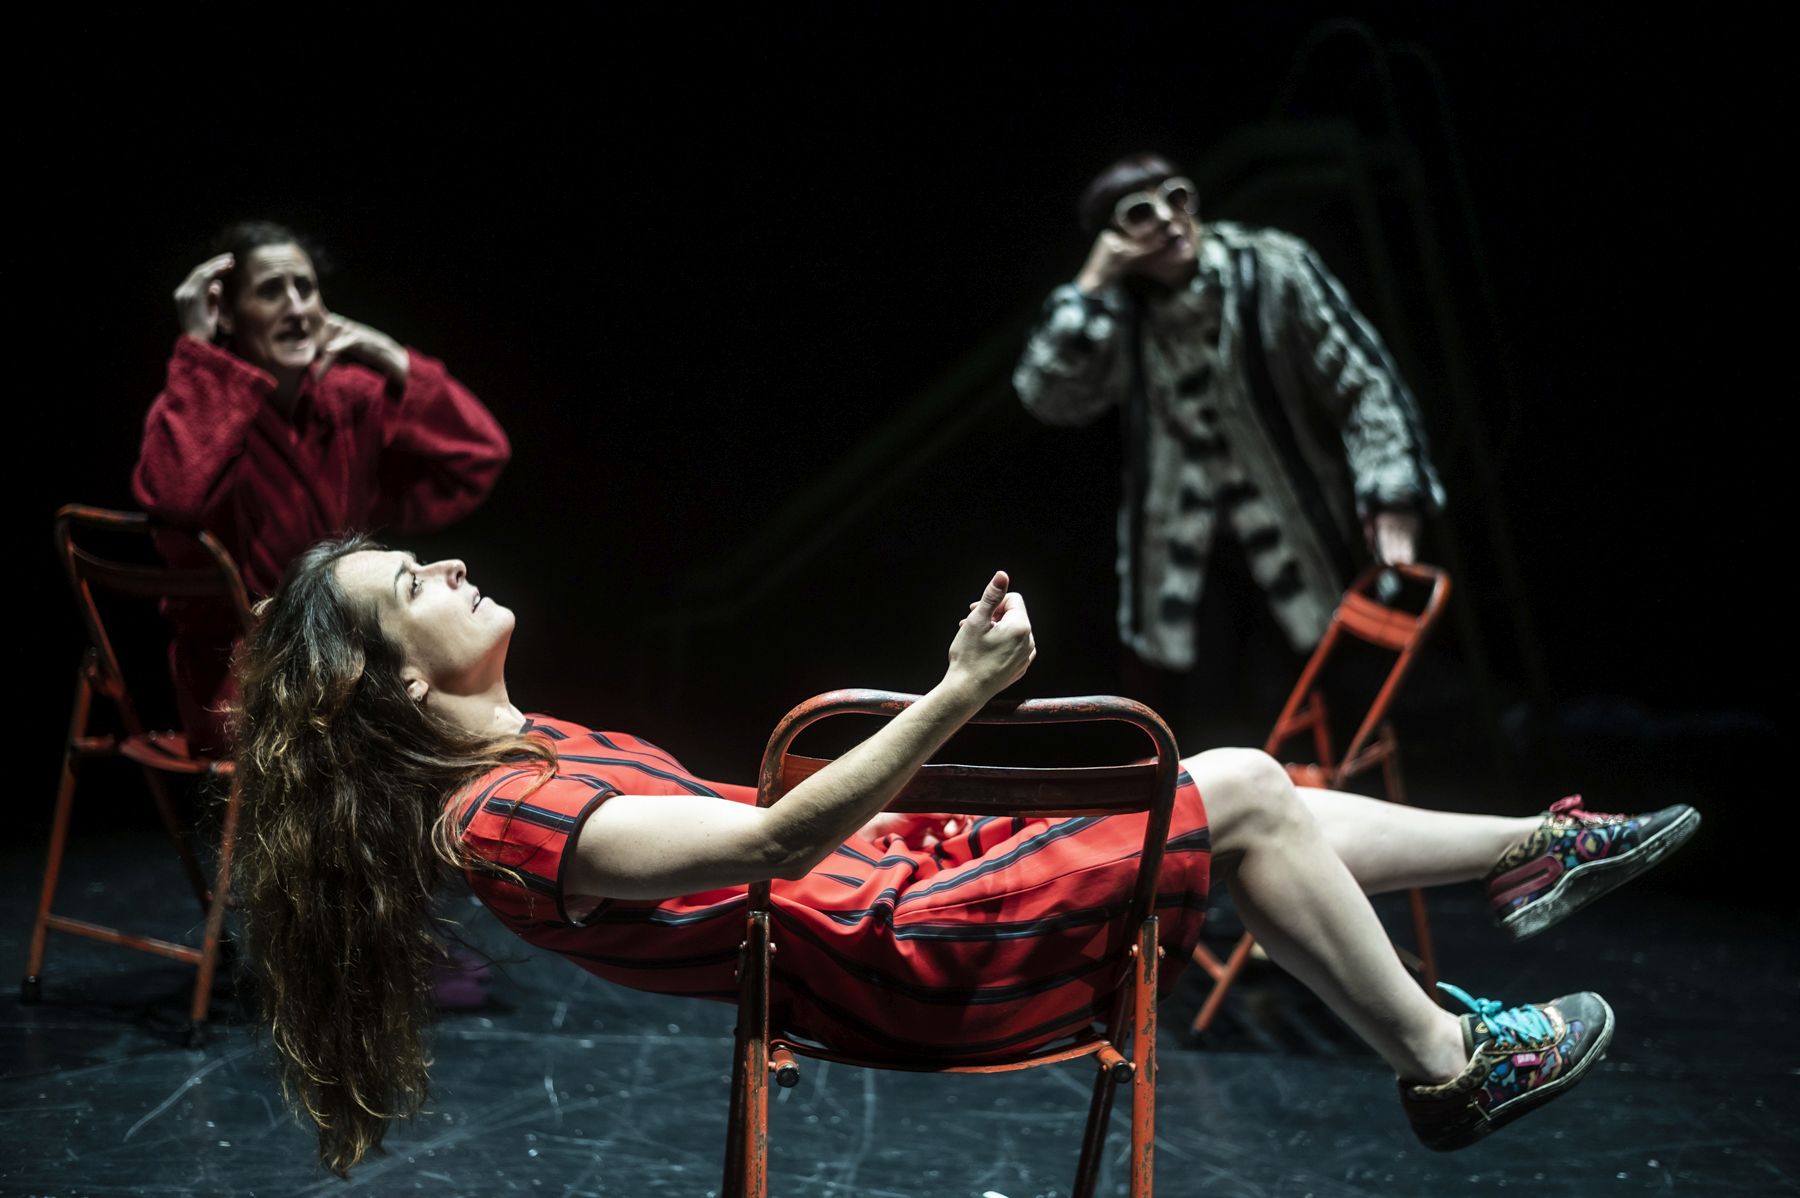 La Extinta Poética trae hasta el Teatro Alhambra ‘Convertiste mi luto en danza’, bajo la dirección de Paco de La Zaranda